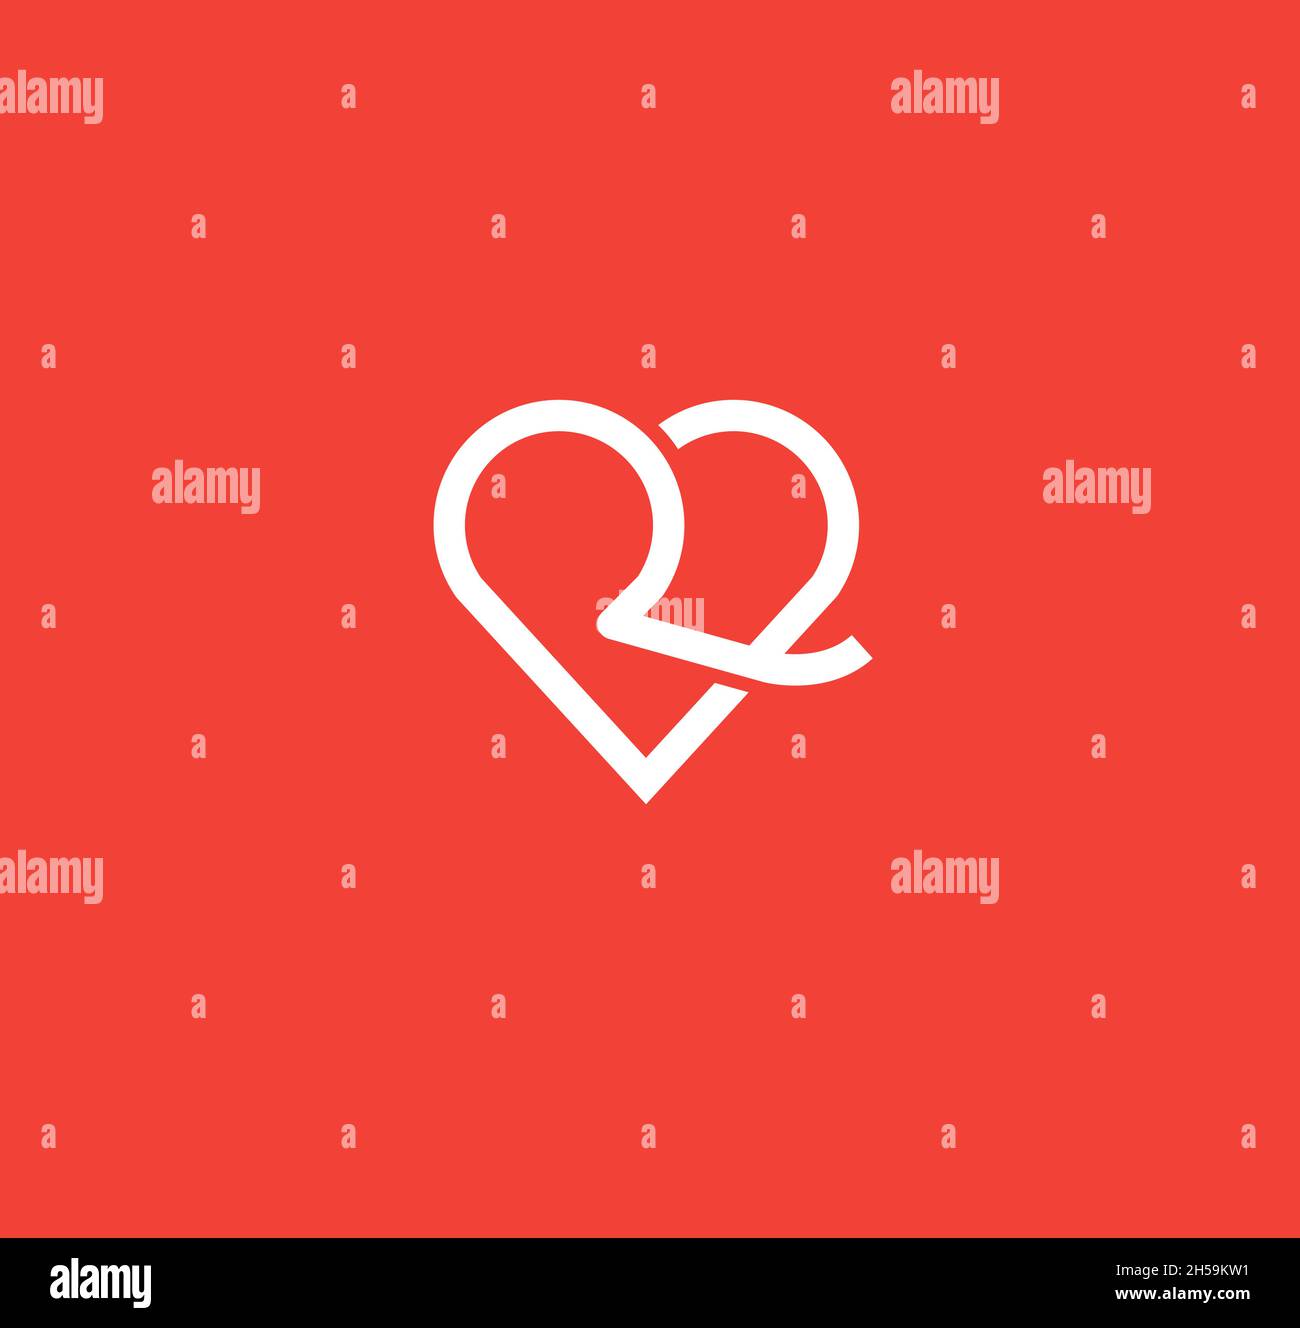 Illustration simple et propre logo initial ligne mono r avec coeur, lettre r coeur logo amour icône Illustration de Vecteur